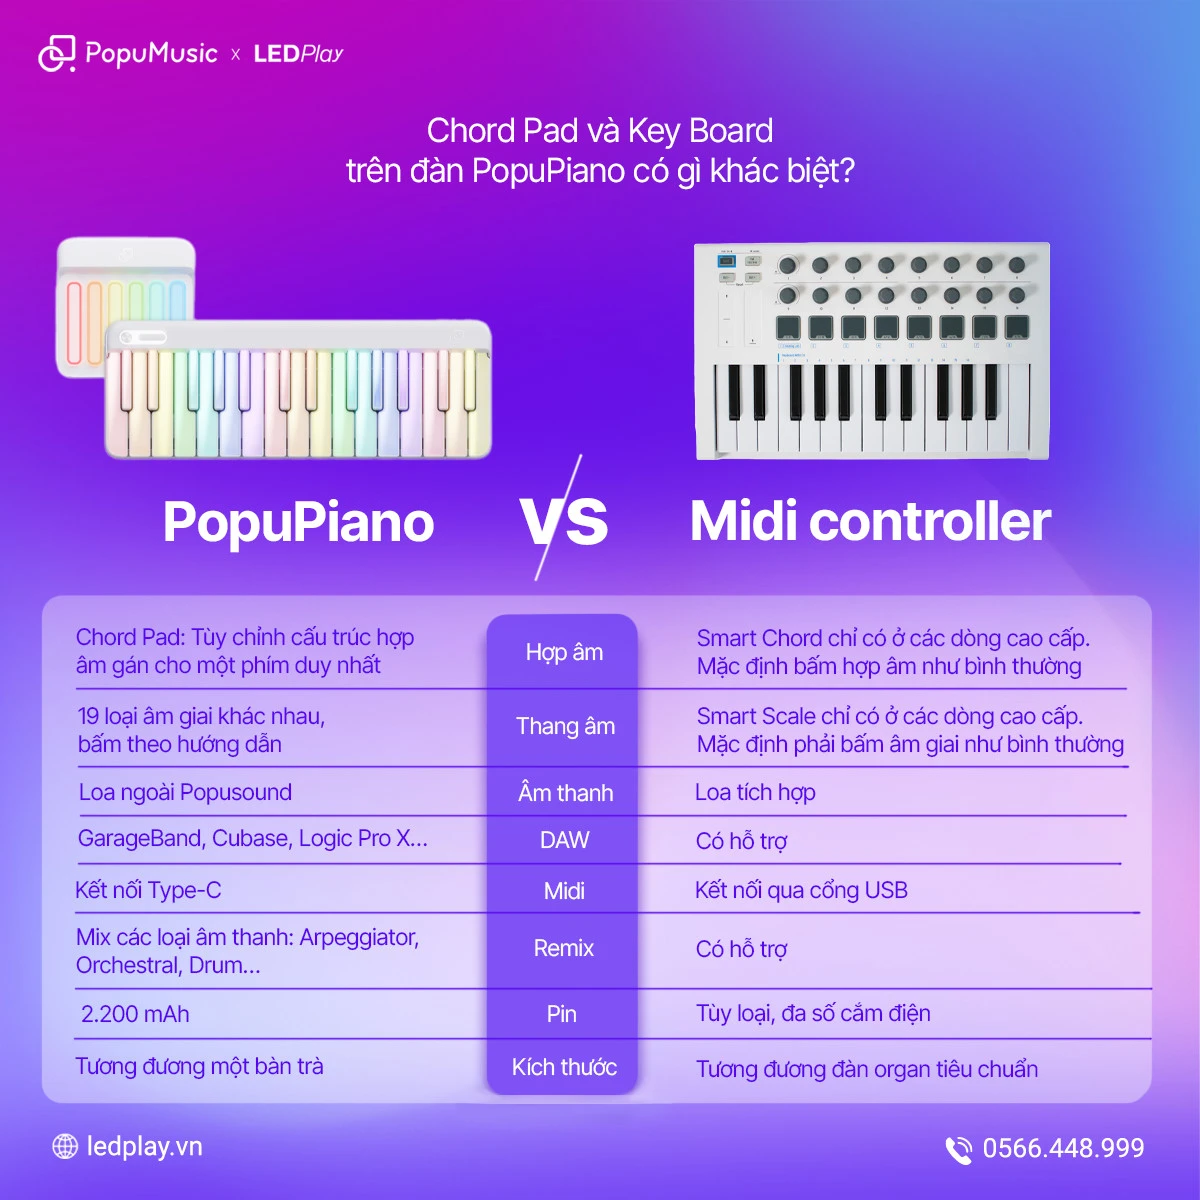 PopuPiano và thiết bị MIDI có nhiều điểm khác biệt khá lớn